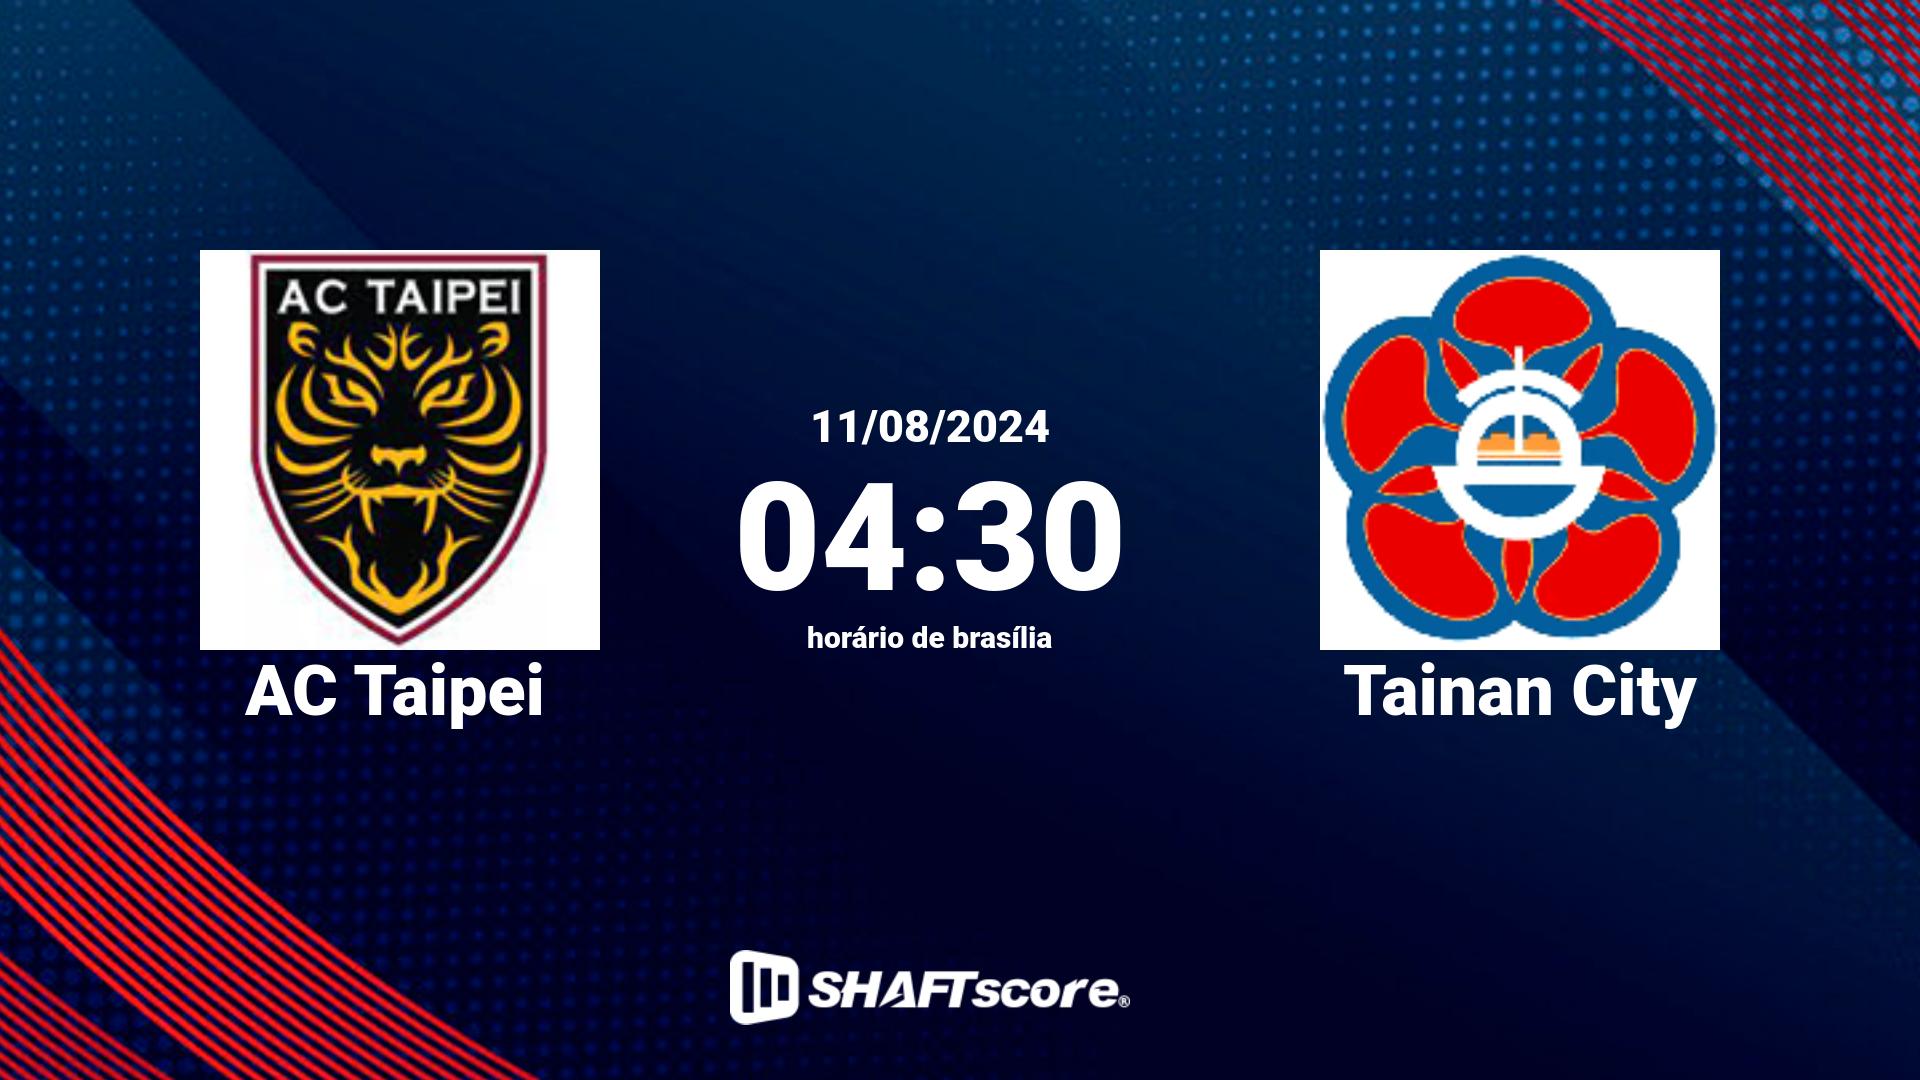 Estatísticas do jogo AC Taipei vs Tainan City 11.08 04:30